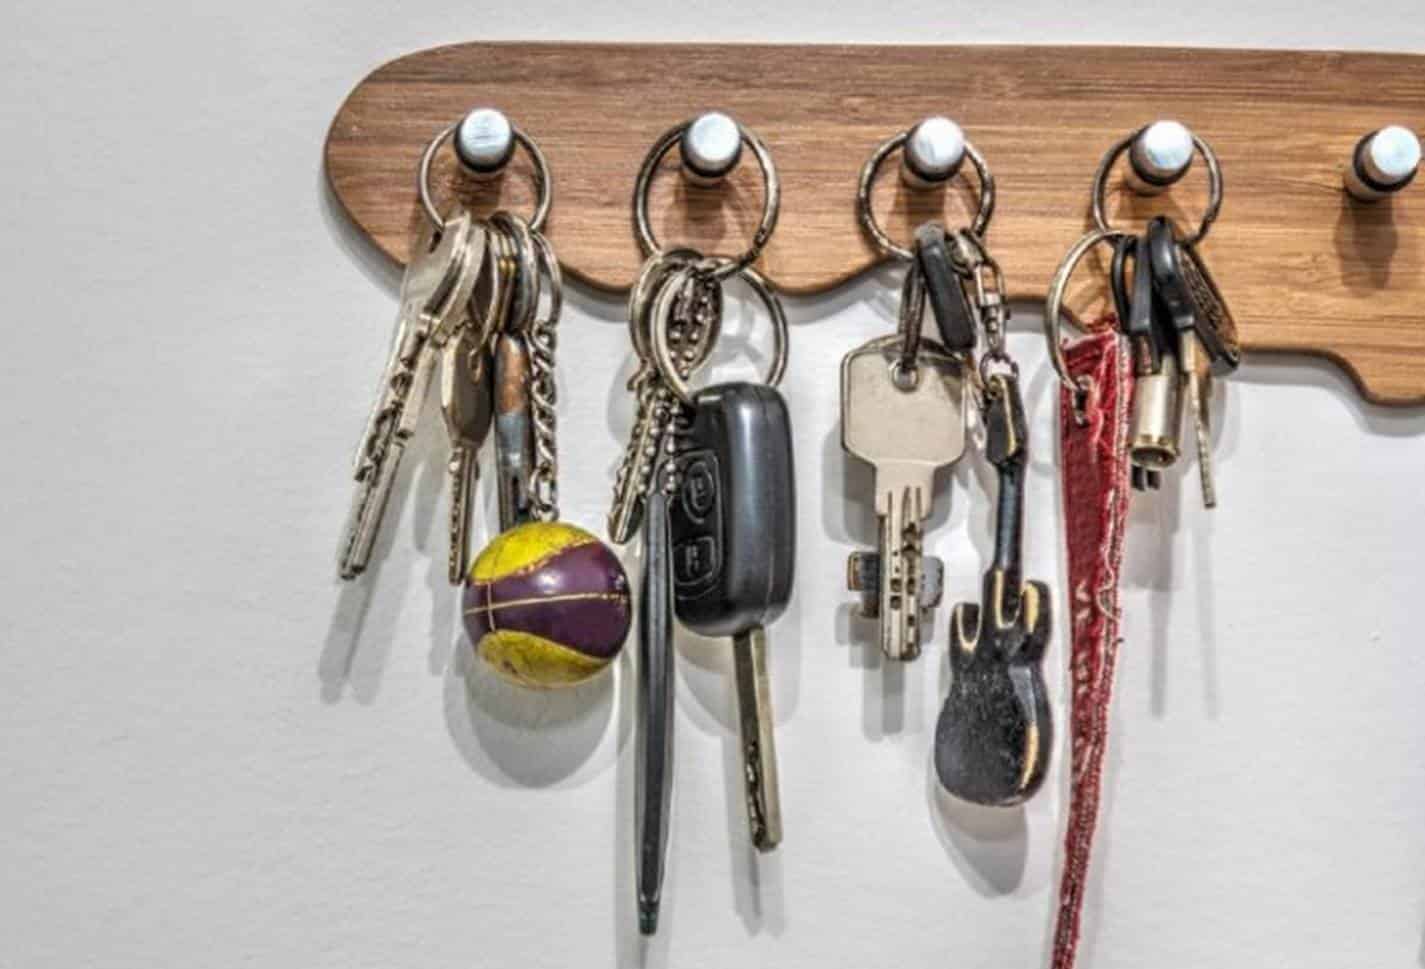 Truque eficaz para desinfetar as chaves de sua casa da maneira correta